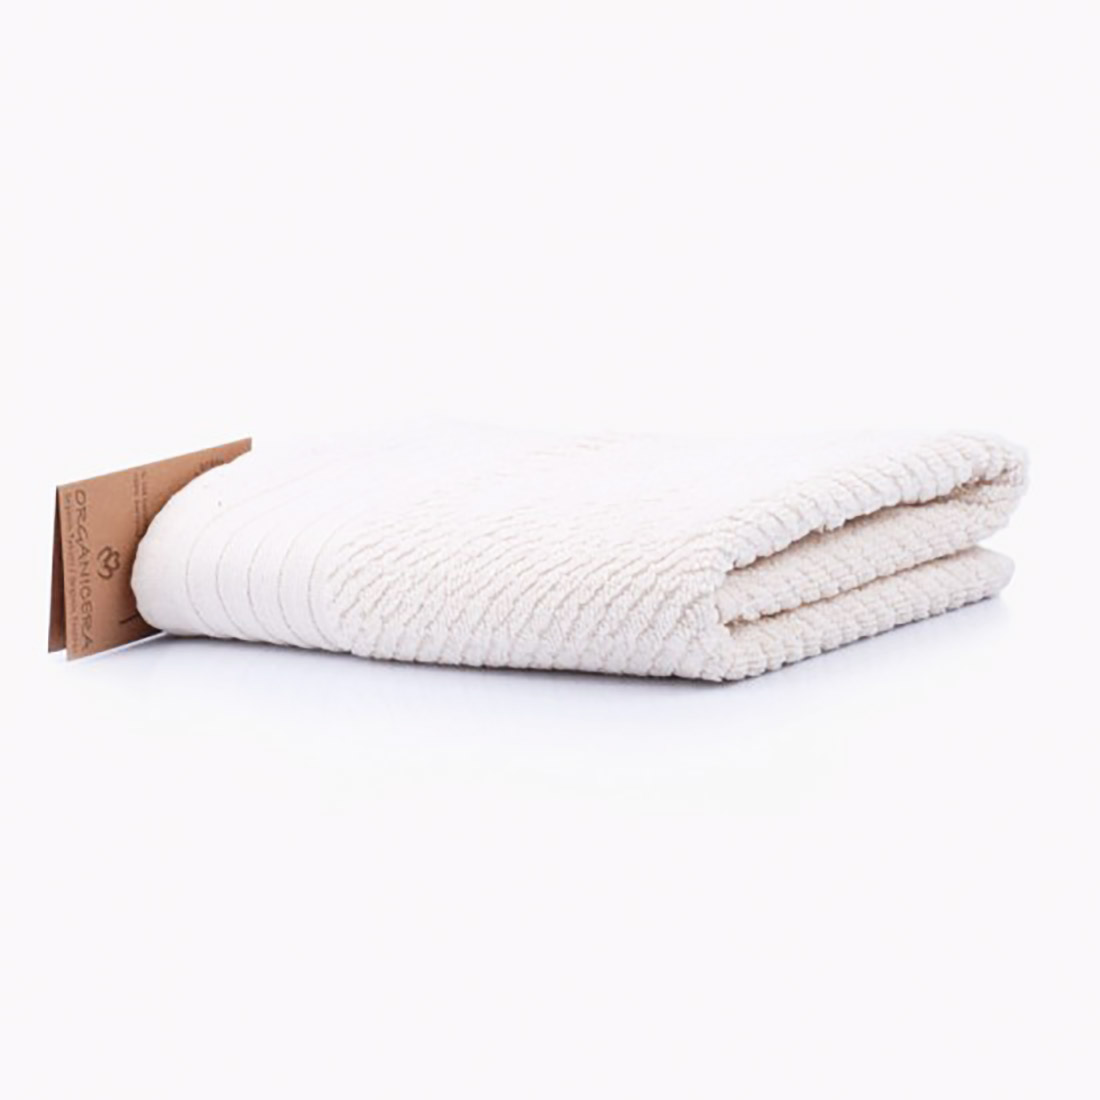 OrganicEra Organic Towel, Cesme